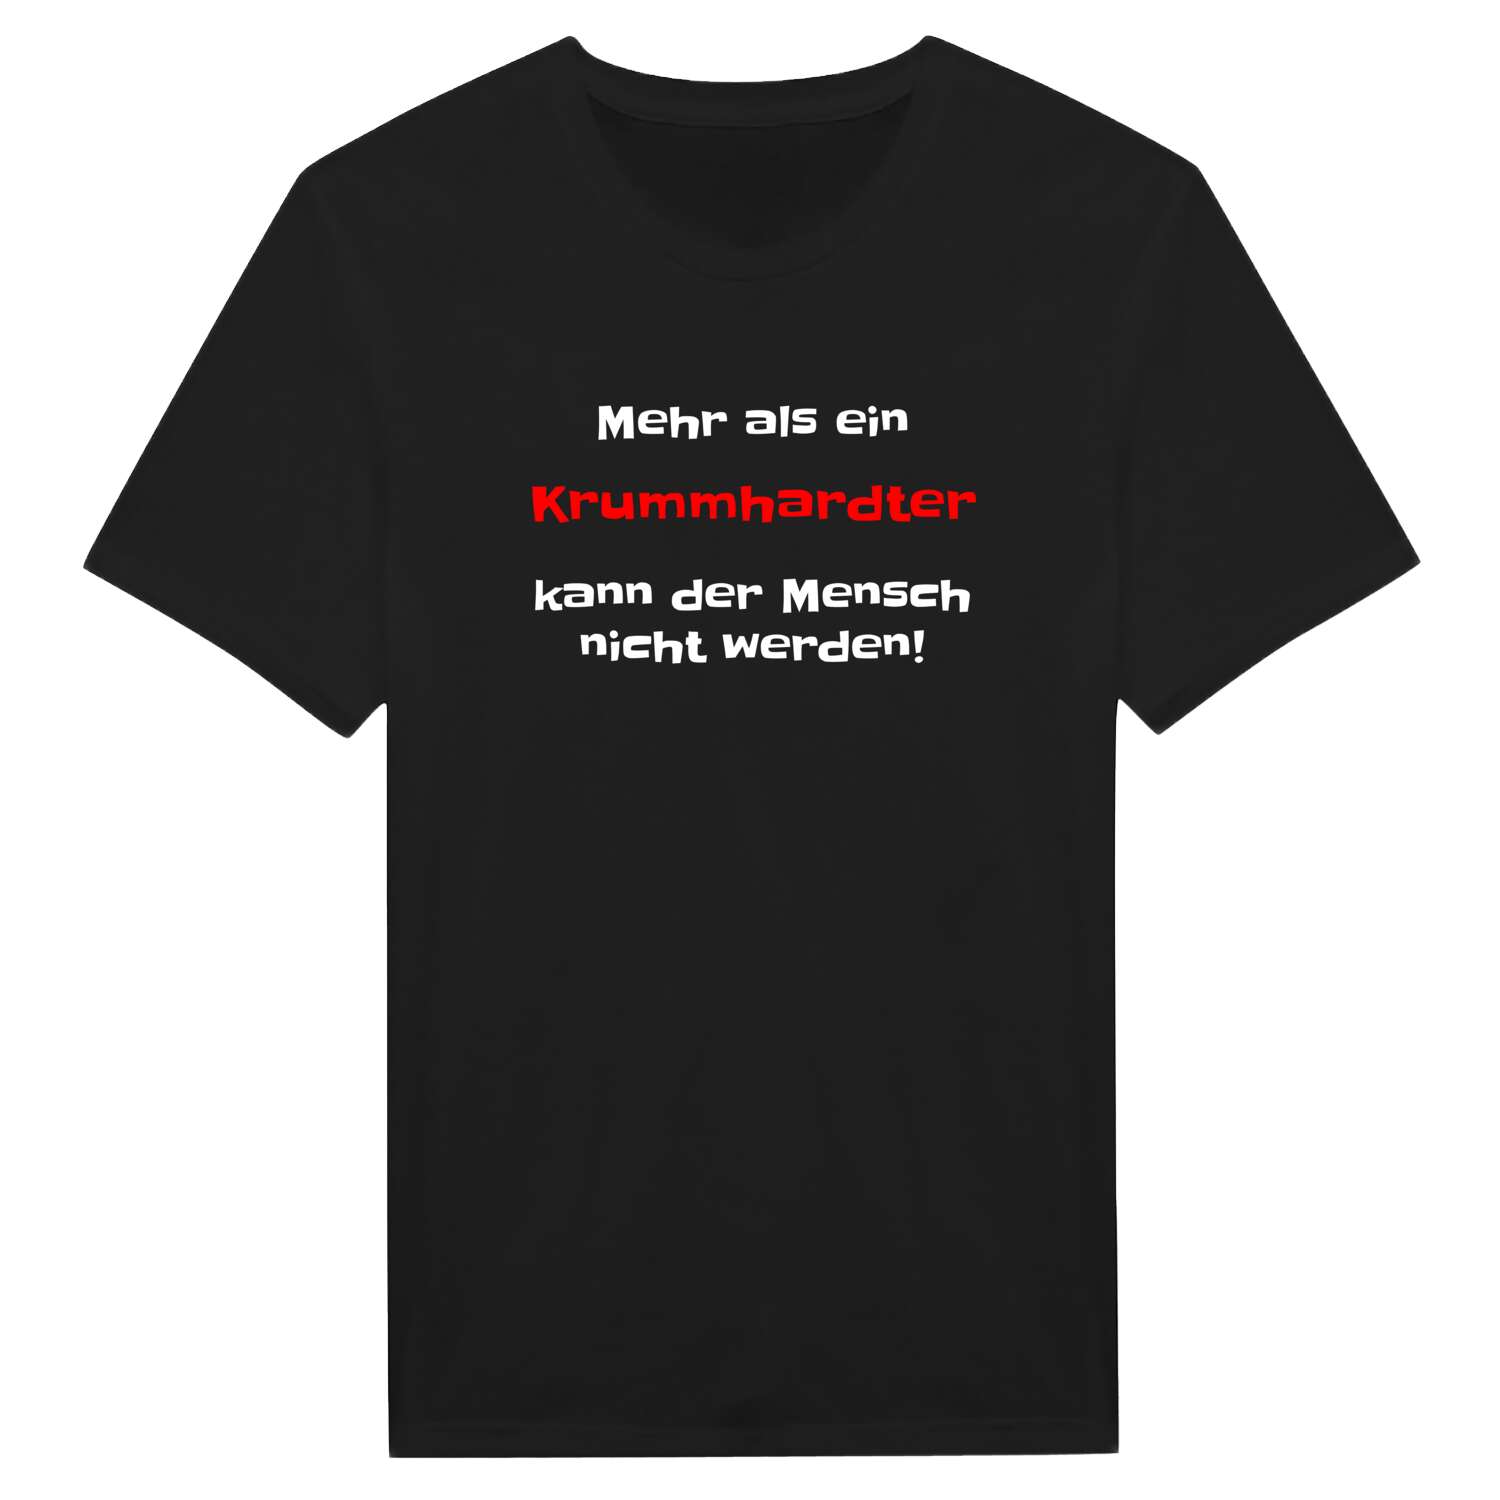 Krummhardt T-Shirt »Mehr als ein«